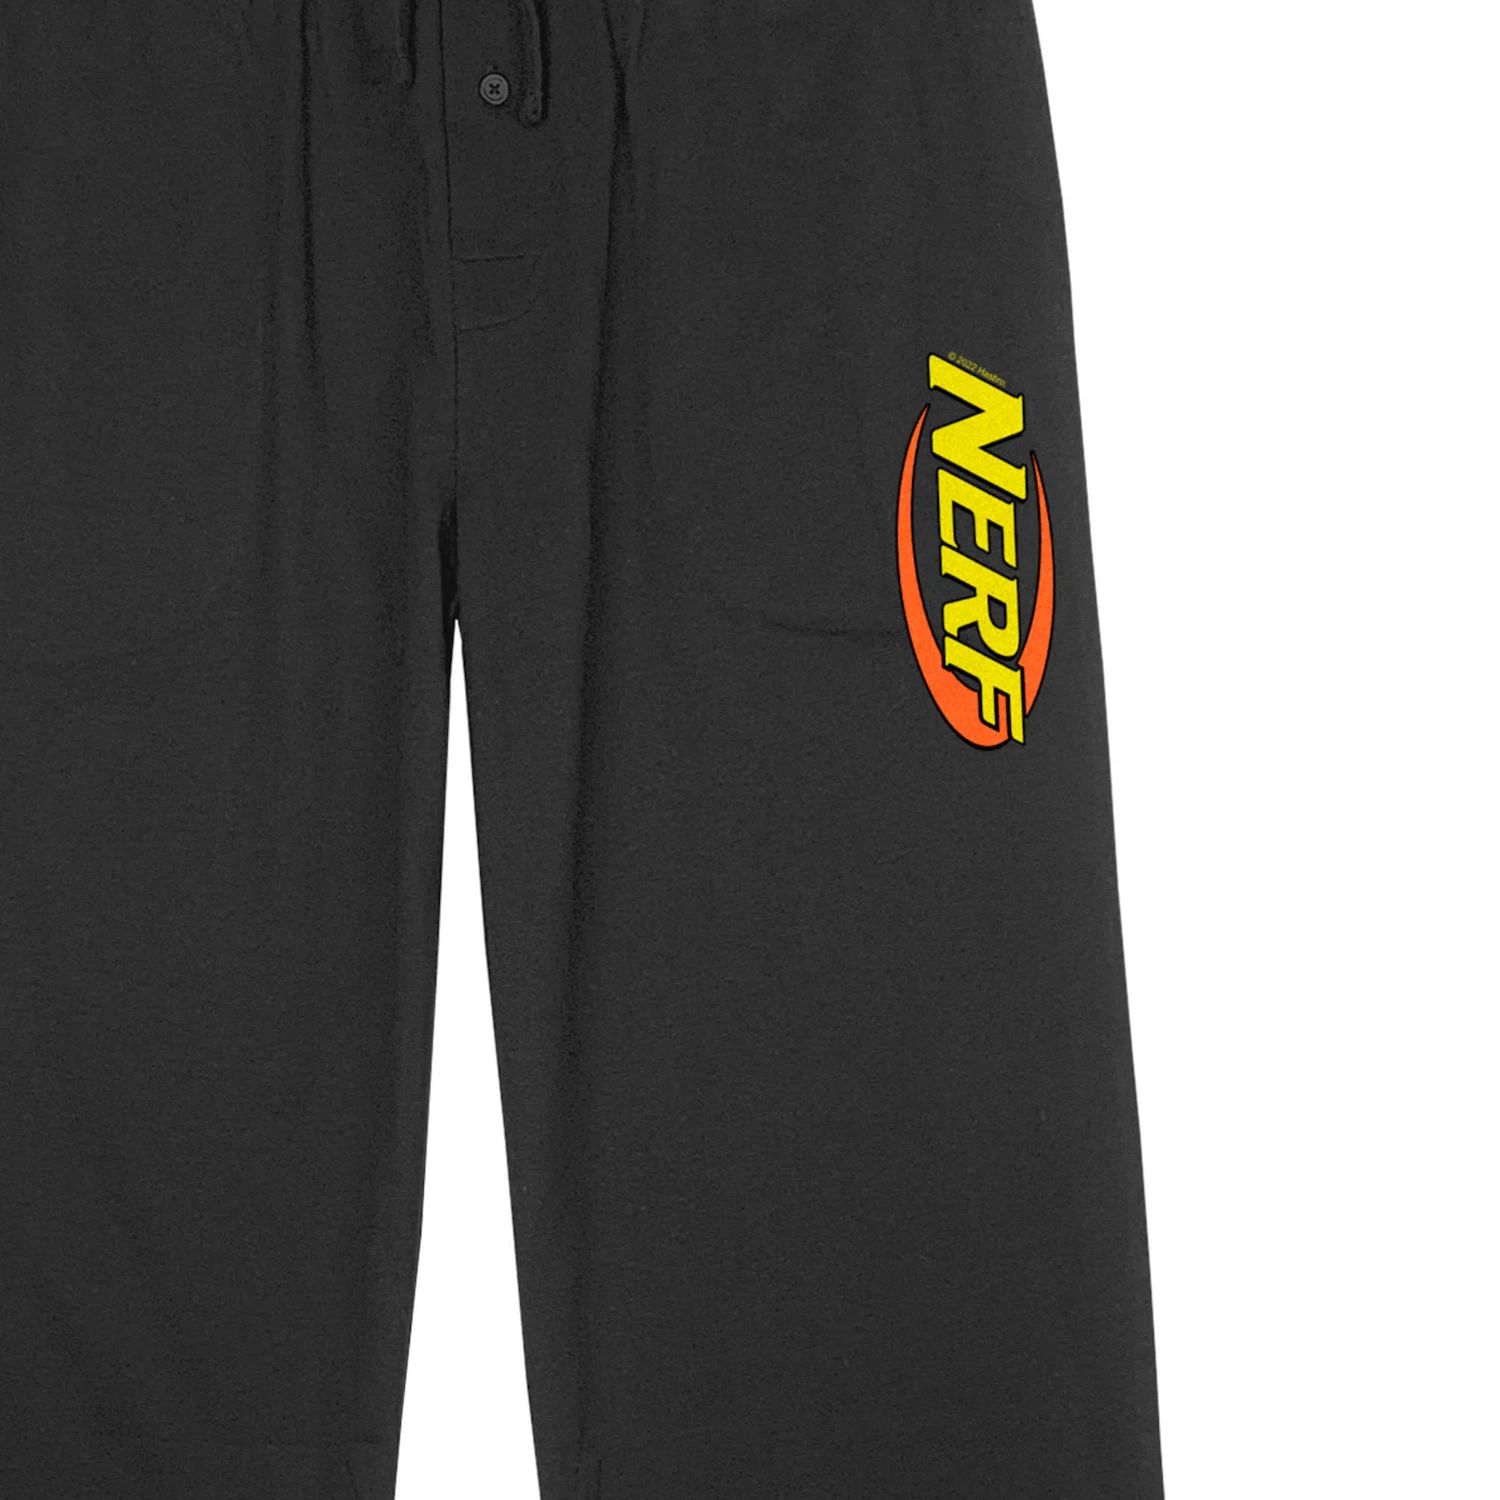 Мужские пижамные брюки с карманами и логотипом Hasbro Nerf Licensed Character мужские пижамные штаны hasbro с логотипом distress risk licensed character